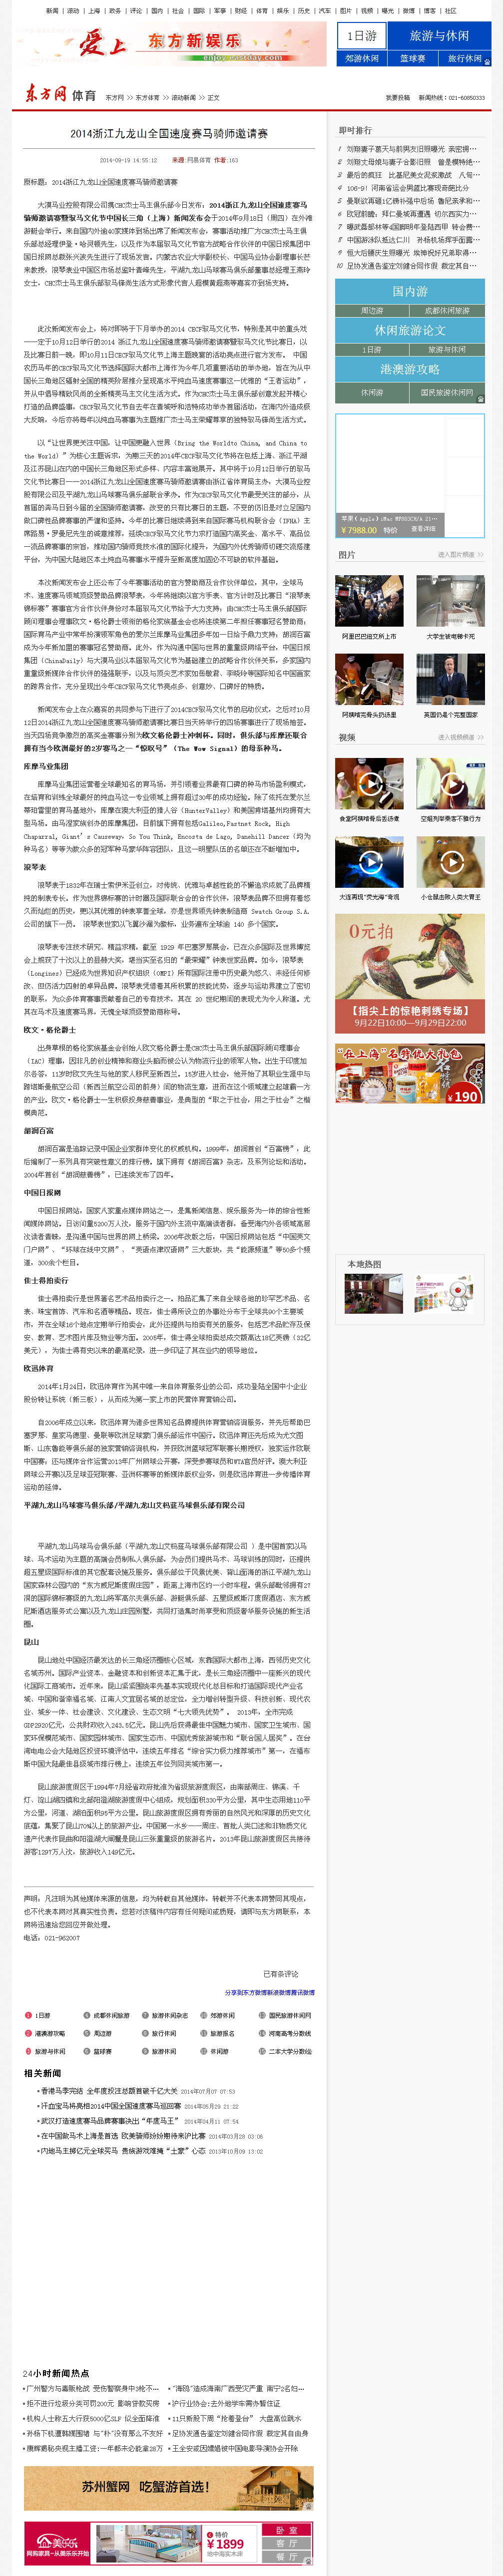 2014浙江jiulong山全國速度賽ma東方網